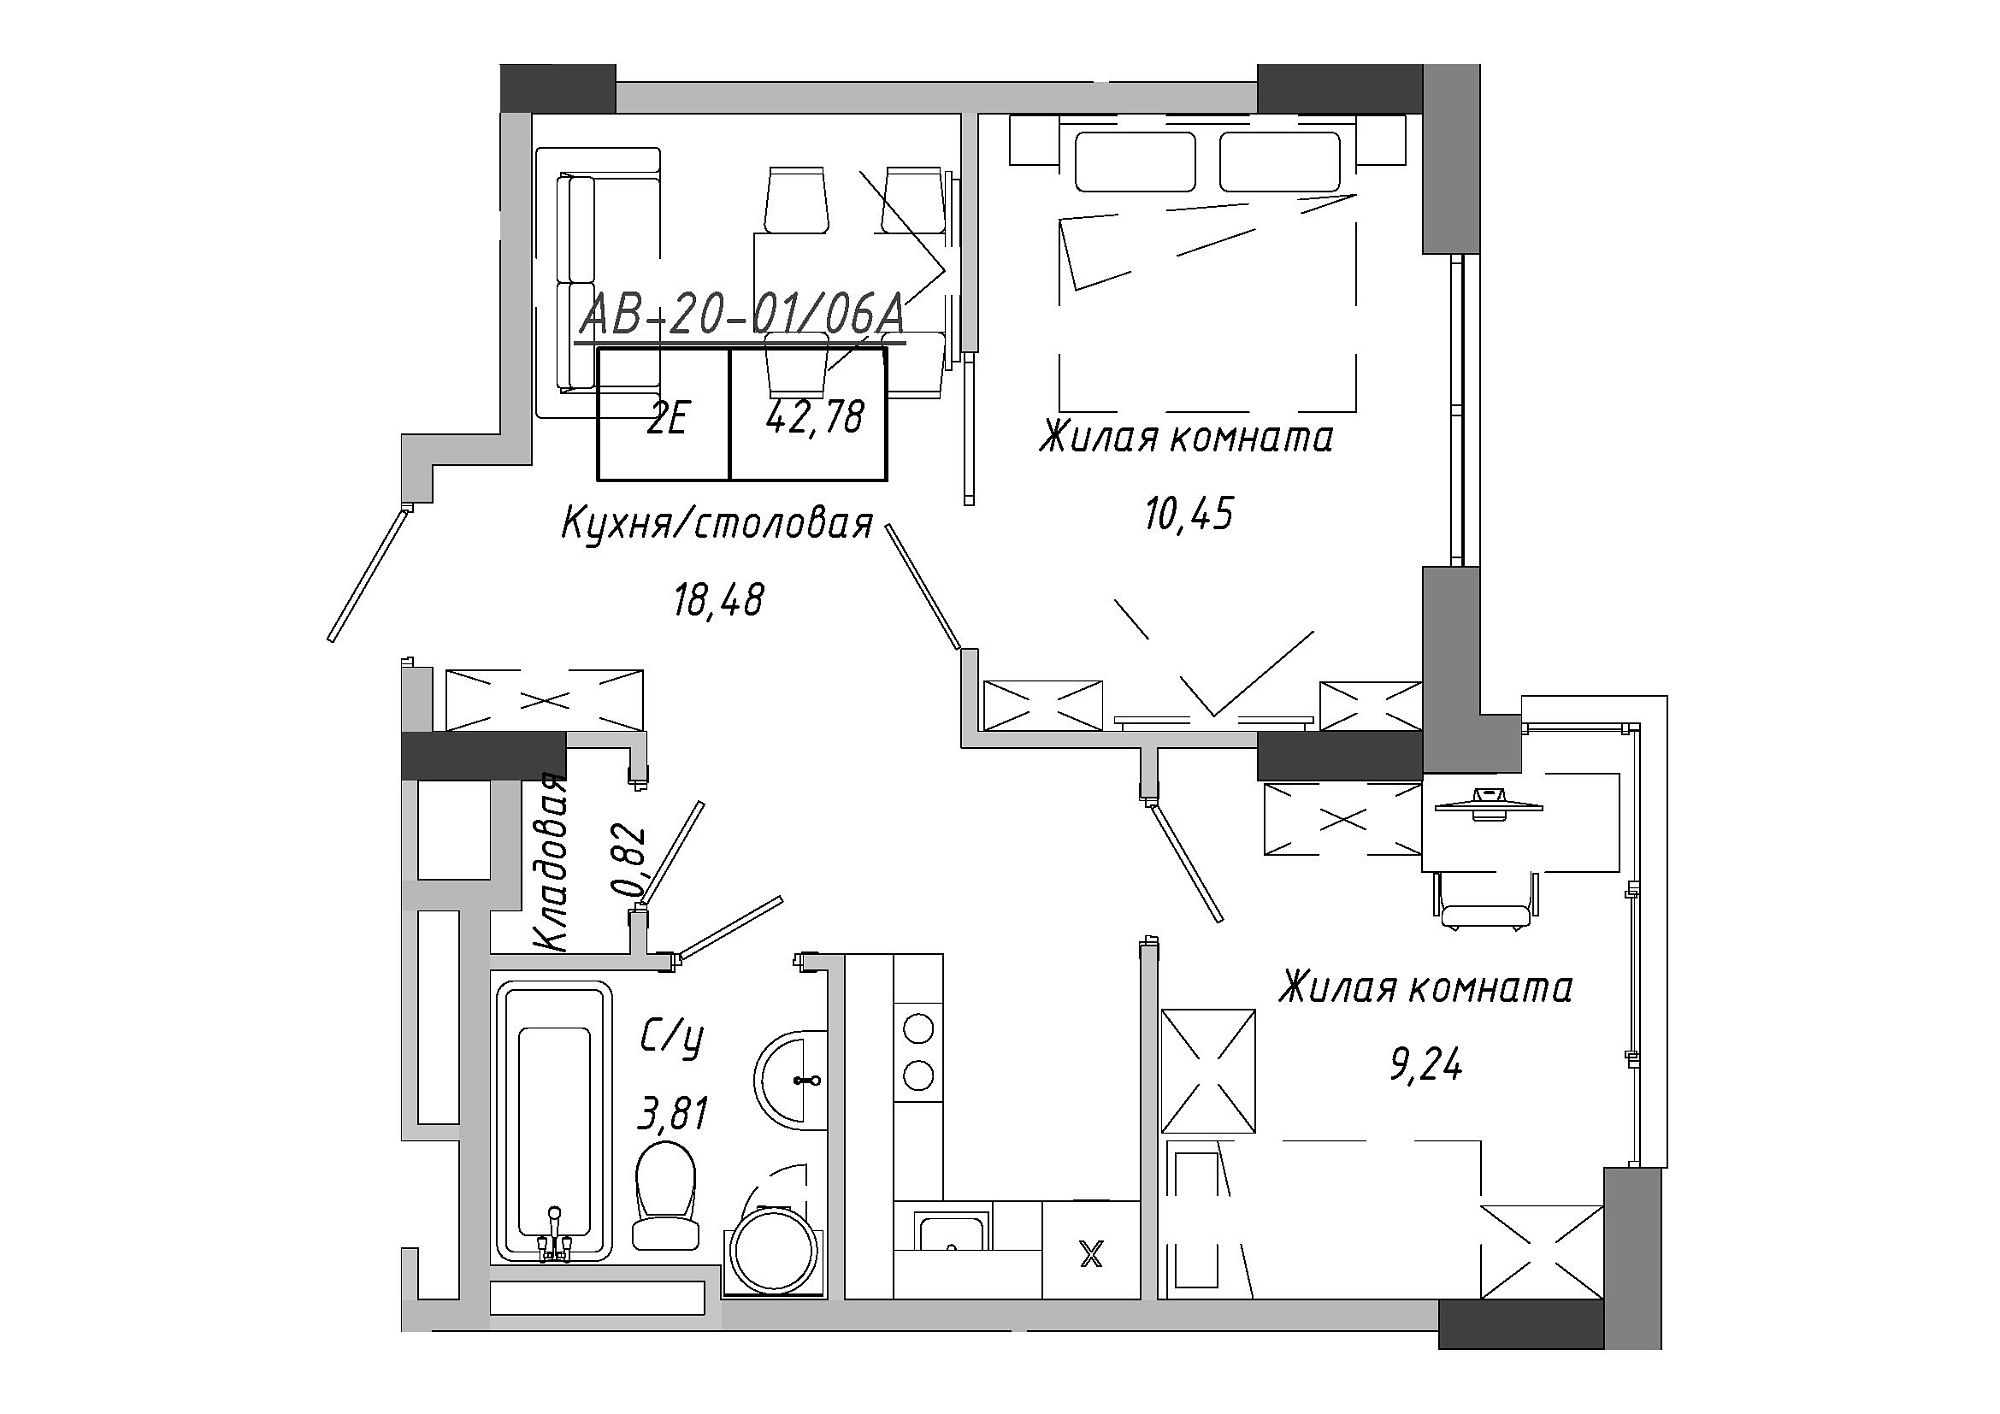 Планування 2-к квартира площею 42.78м2, AB-20-01/0006а.